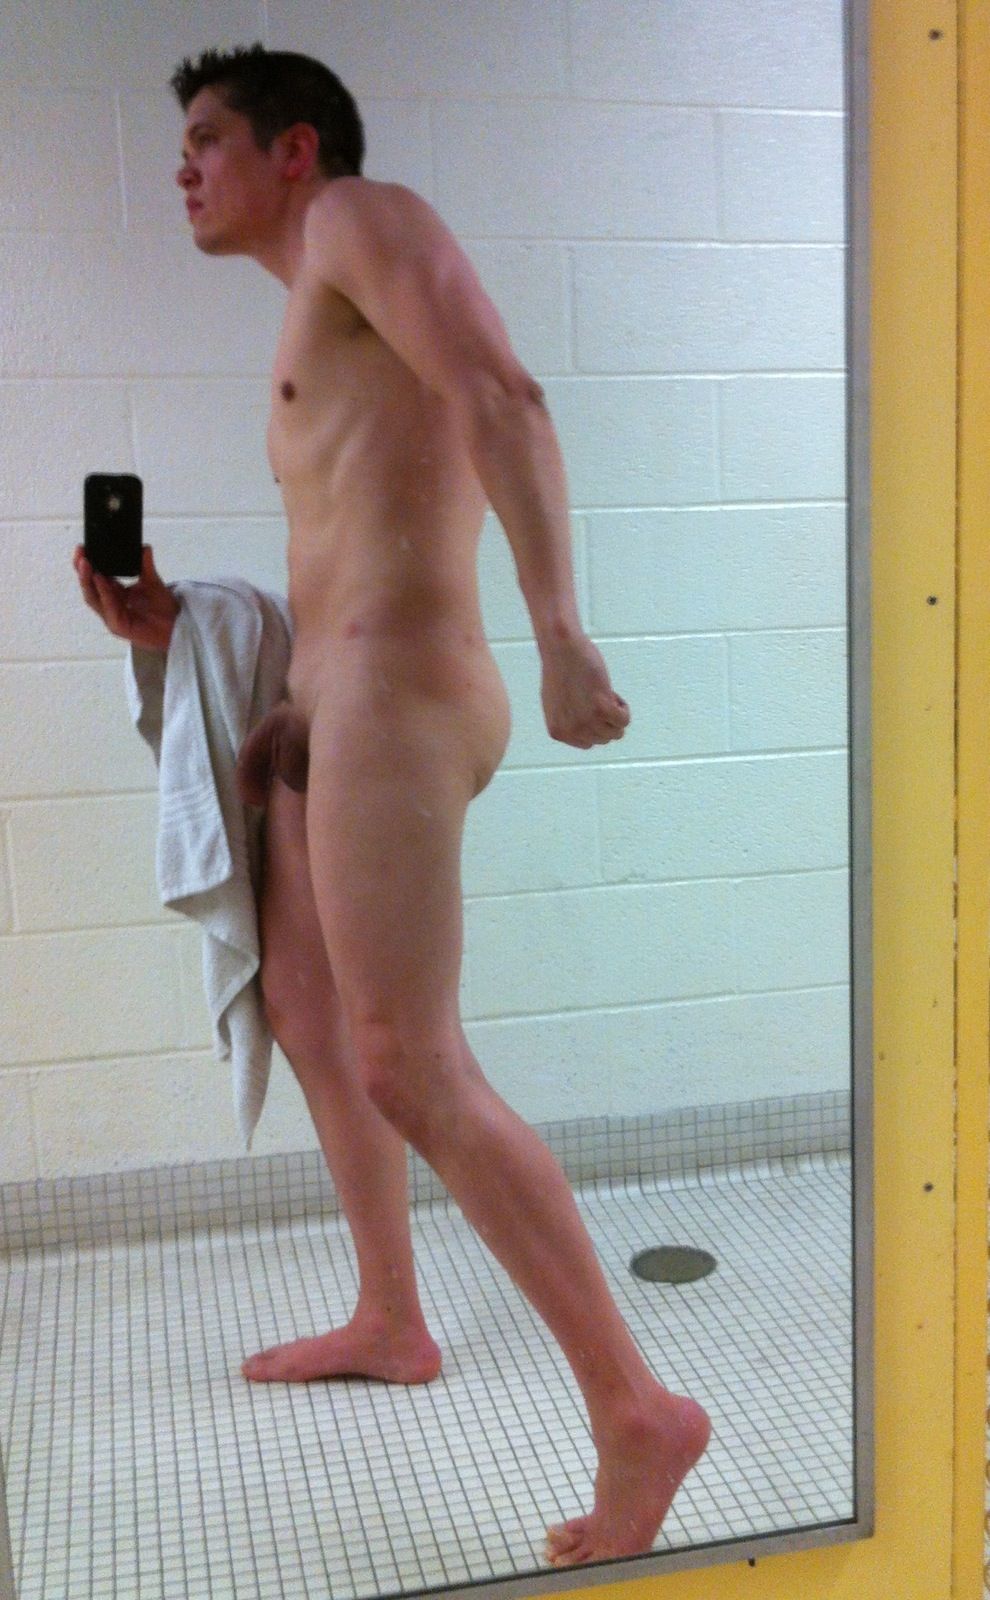 Scavenger reccomend shower after gym